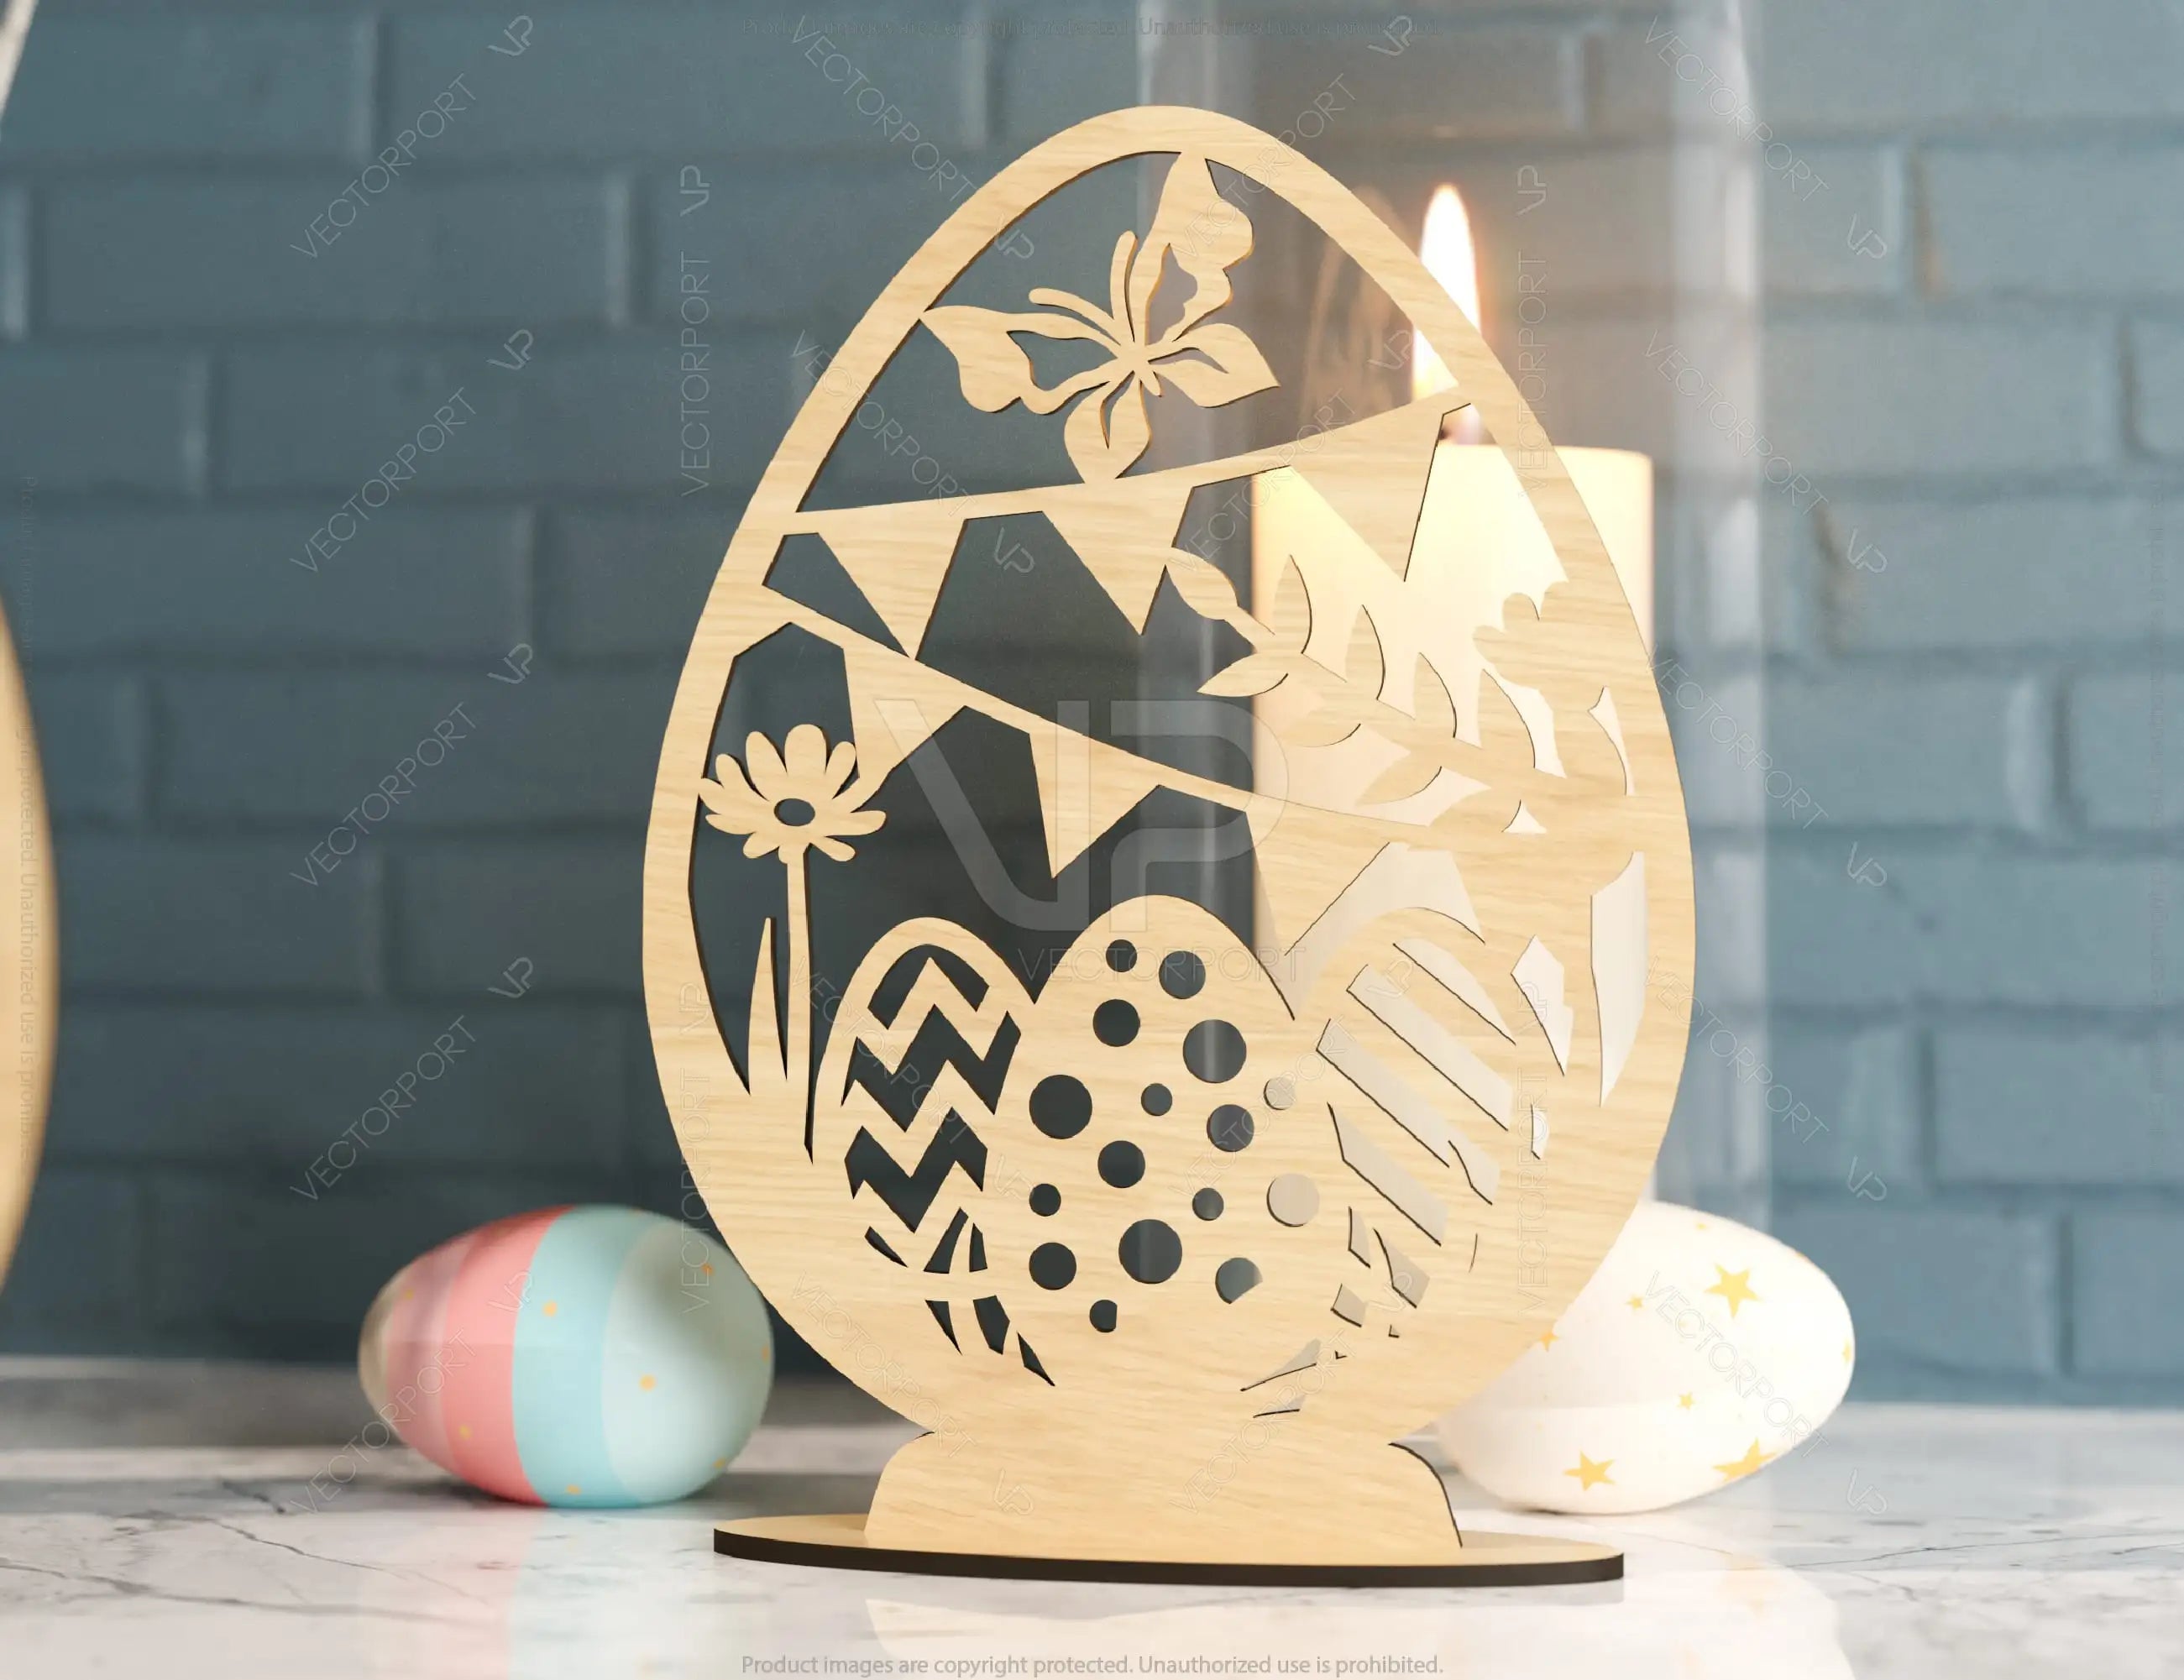 Standing Easter Egg Ornaments Laser Cut Files Egg SVG bundle 3 Elements Digital Download |#180|